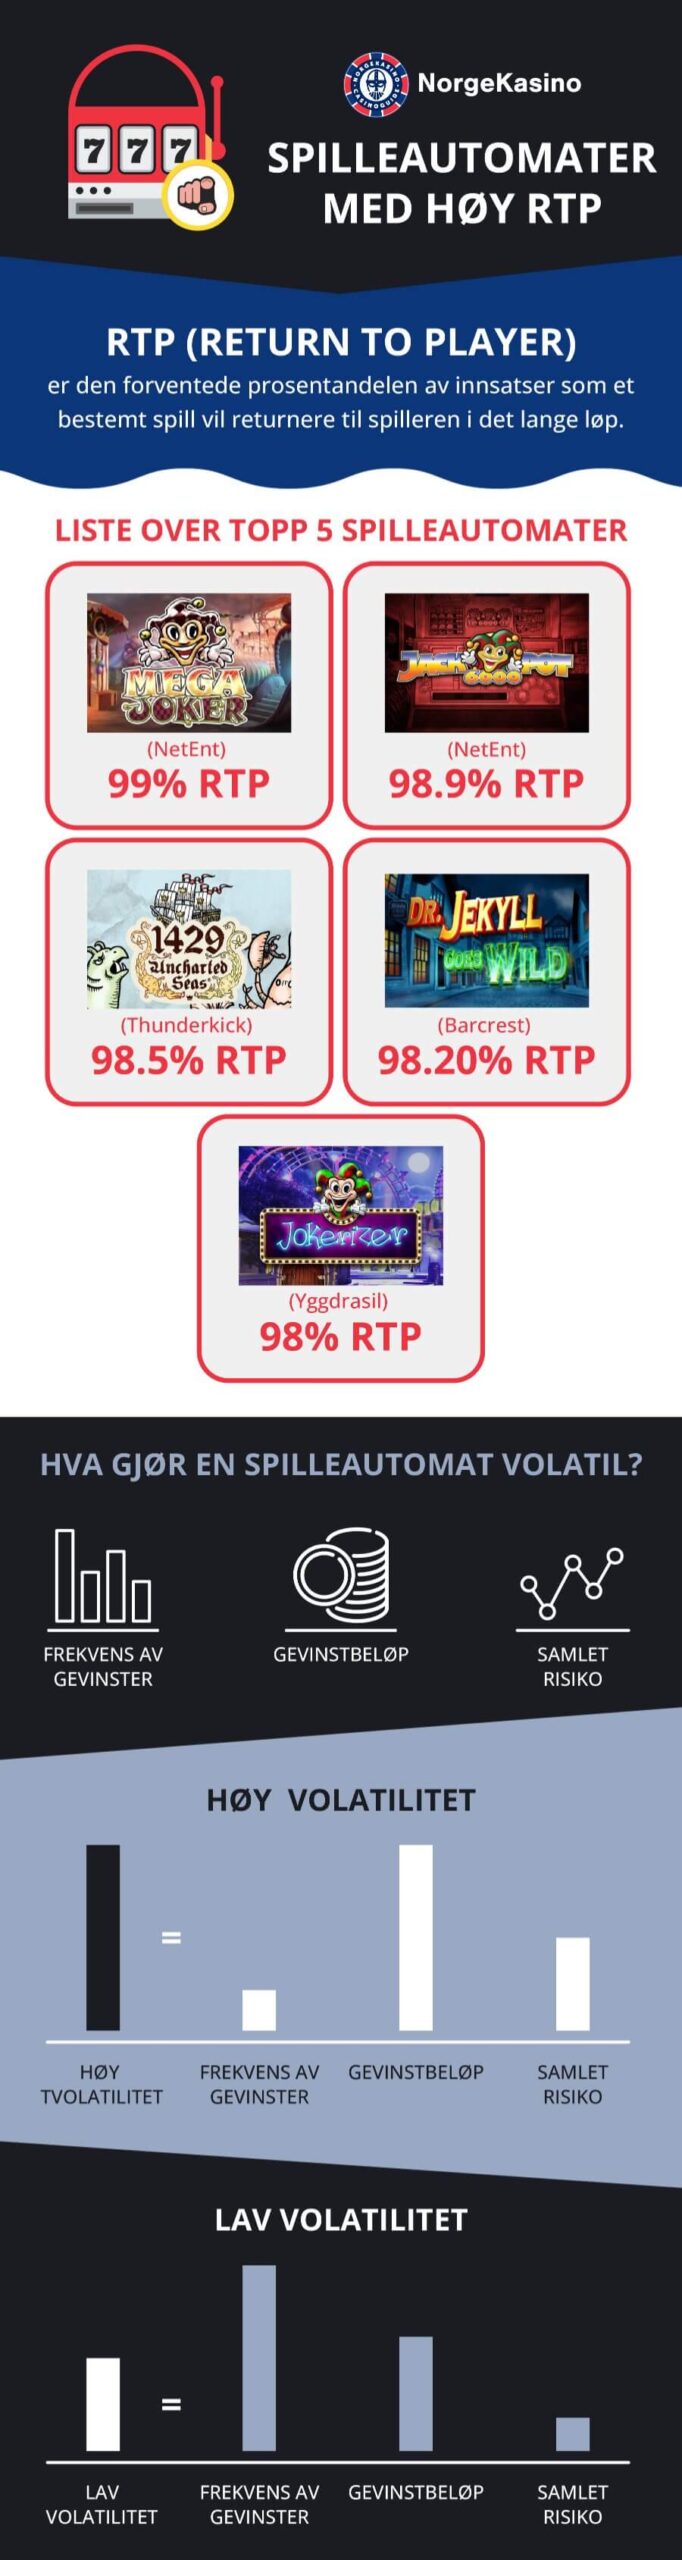 Infografikk av spilleautomater med høy RTP